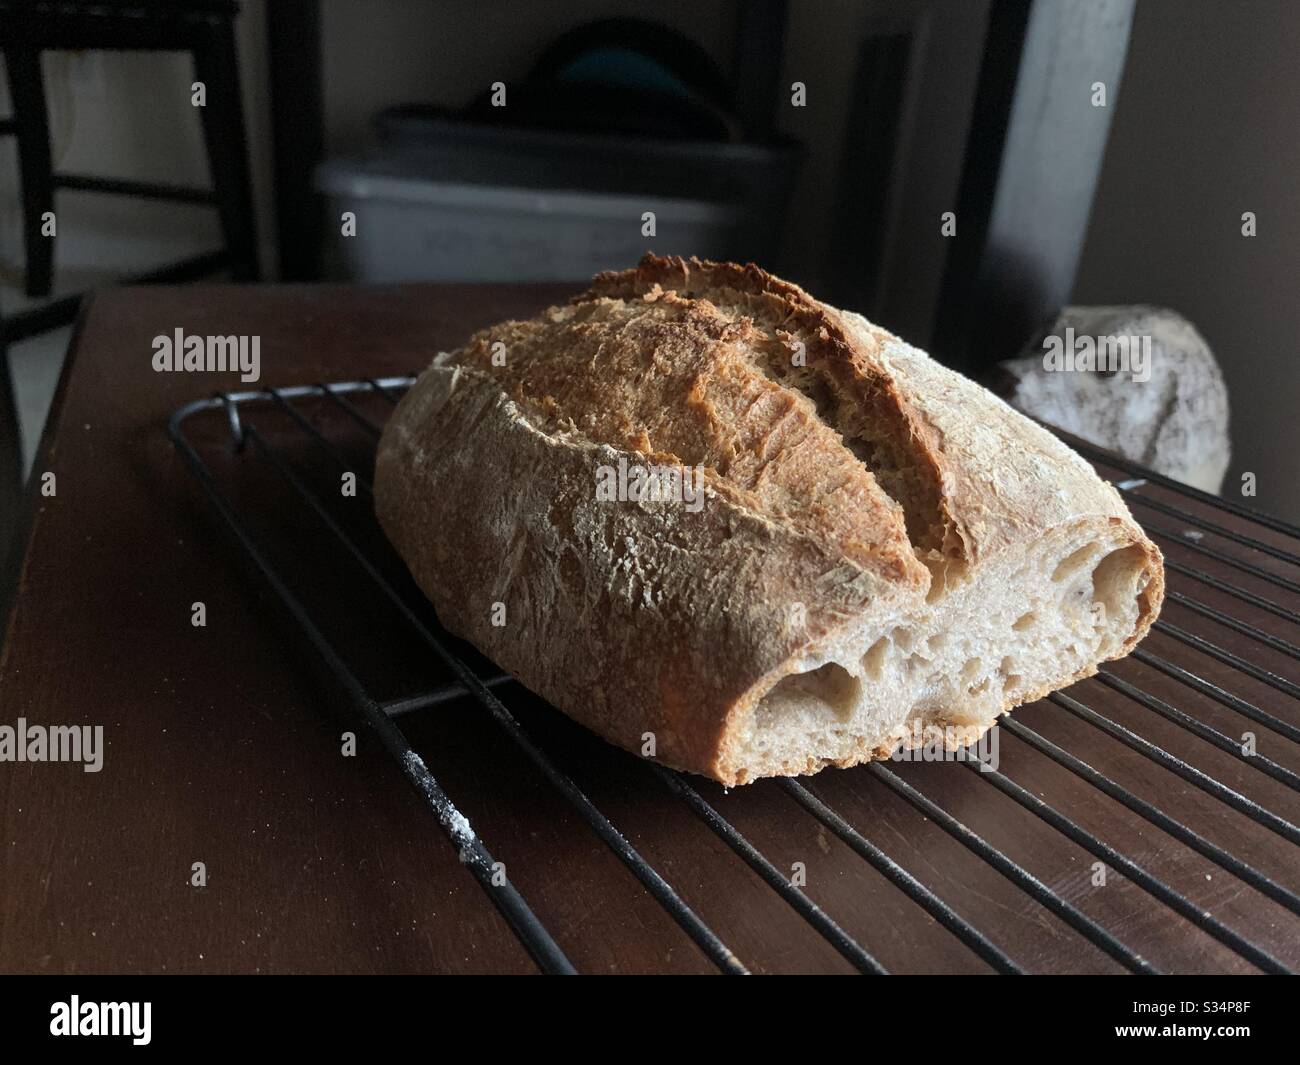 Si tratta di una pagnotta di pane con pasta di sourdough che ho cotto. Il cane sullo sfondo è un pezzo d'arte antica il pane utilizzato farina di segale e grano intero. Foto Stock